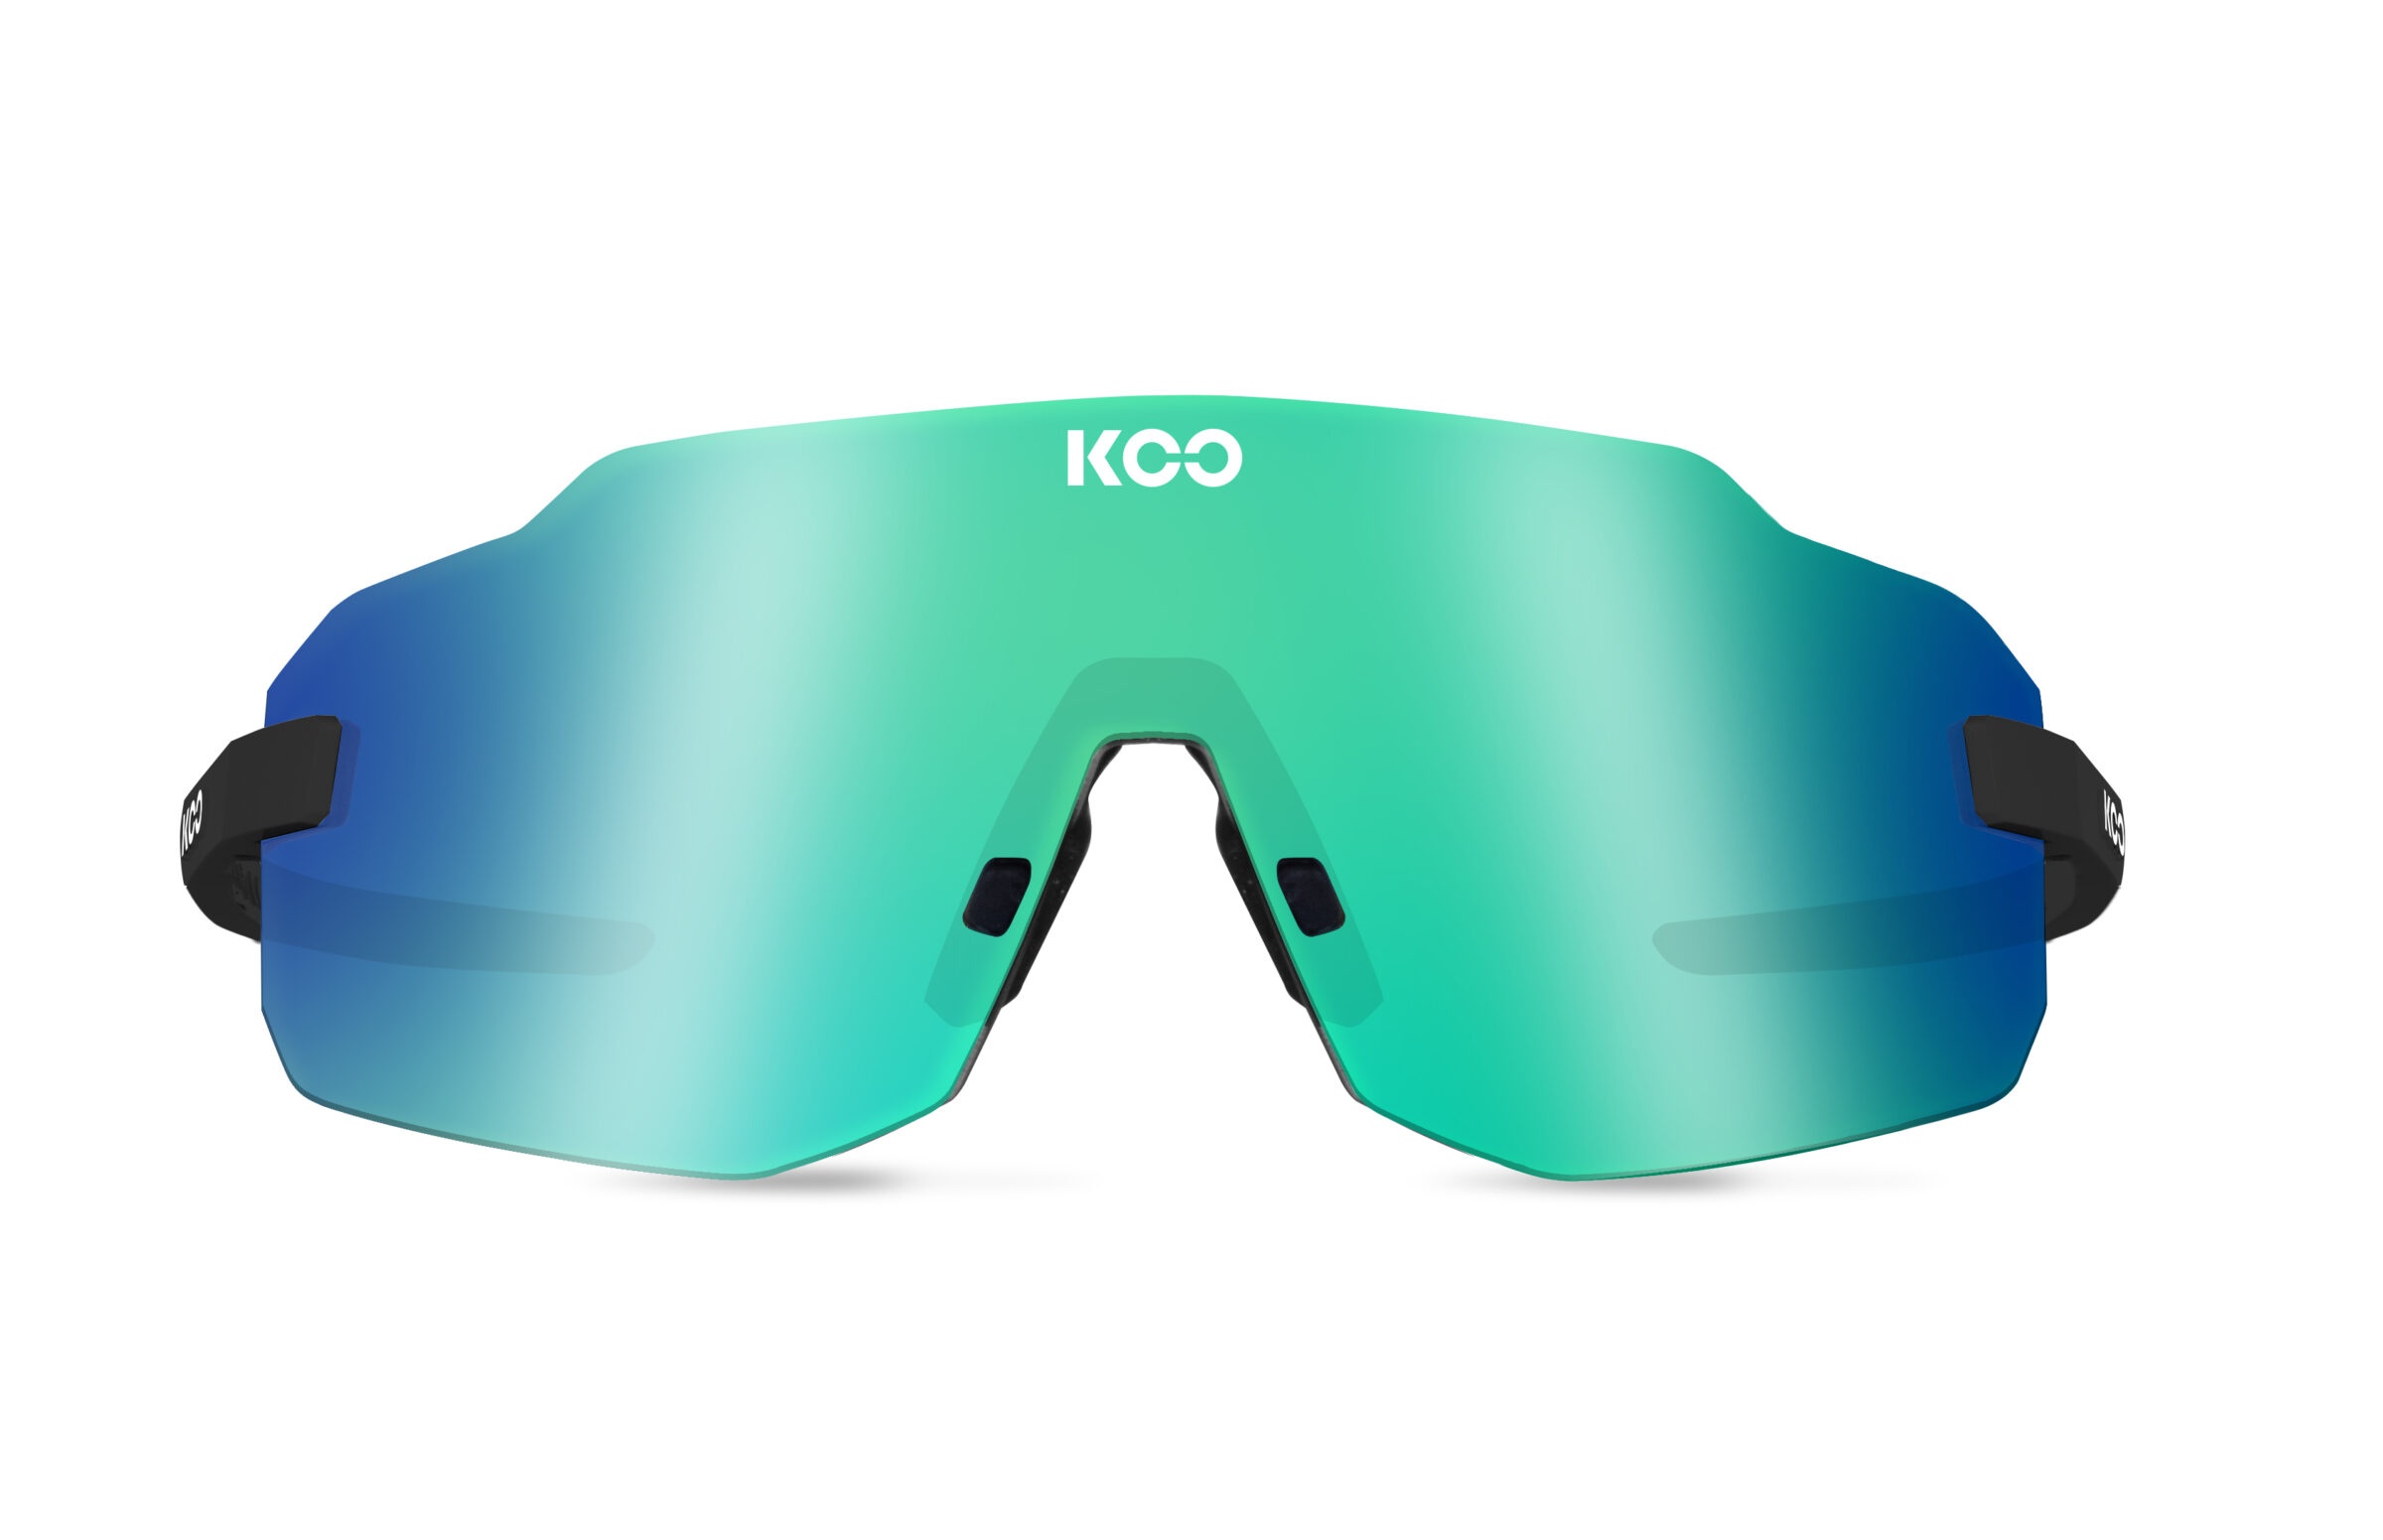 Beklædning - Cykelbriller - KOO Supernova Cykelbrille - Sort/grøn